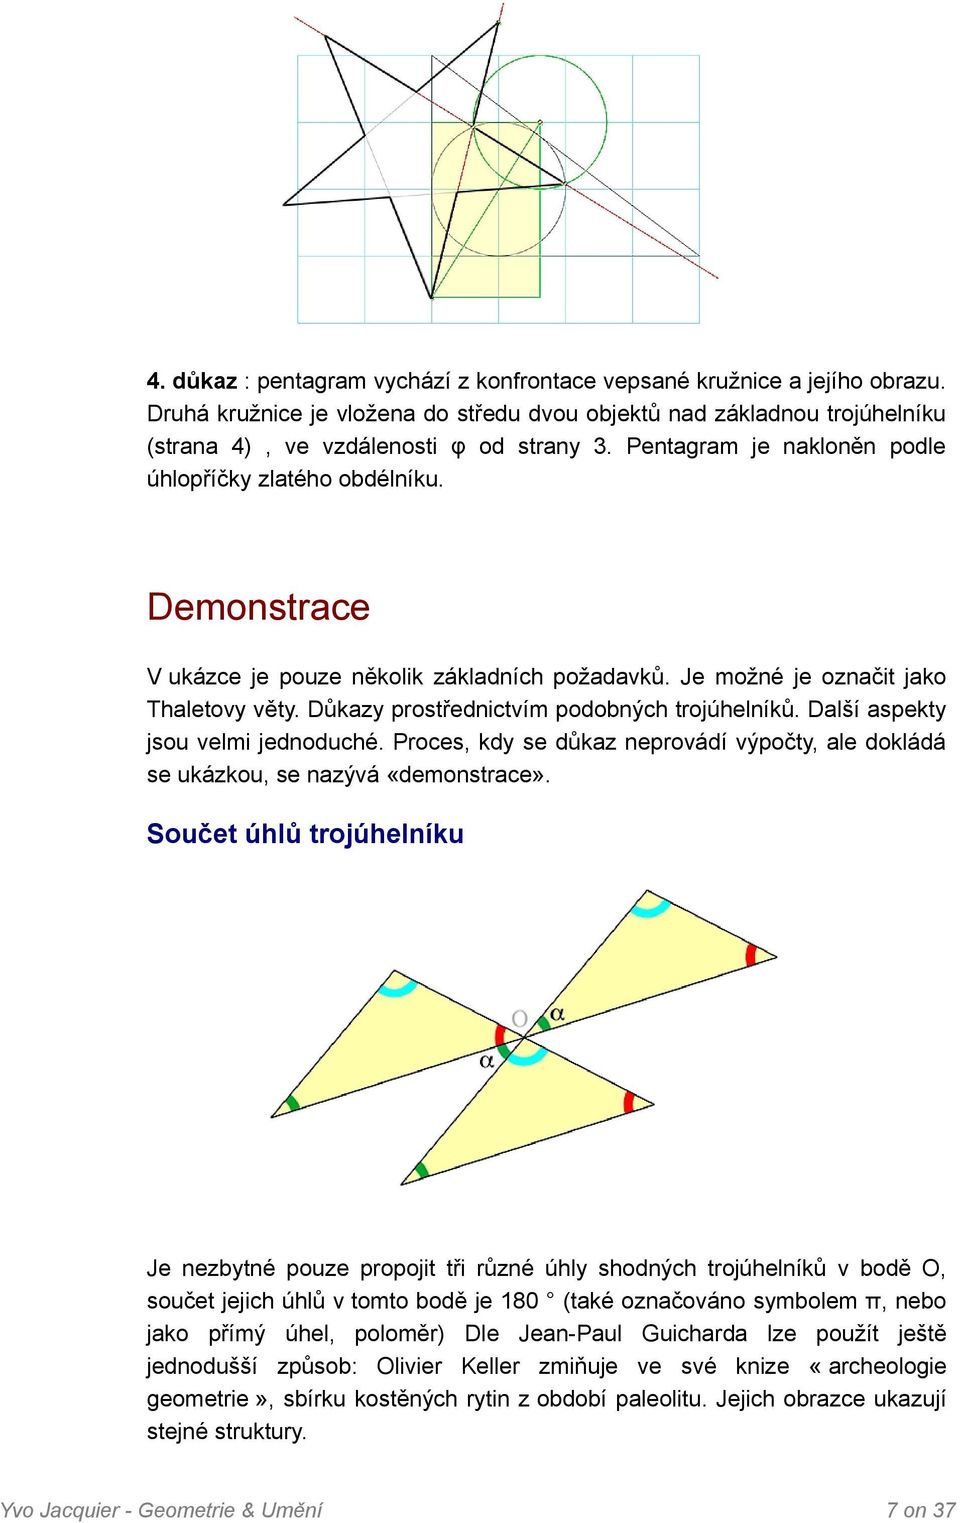 Důkazy prostřednictvím podobných trojúhelníků. Další aspekty jsou velmi jednoduché. Proces, kdy se důkaz neprovádí výpočty, ale dokládá se ukázkou, se nazývá «demonstrace».